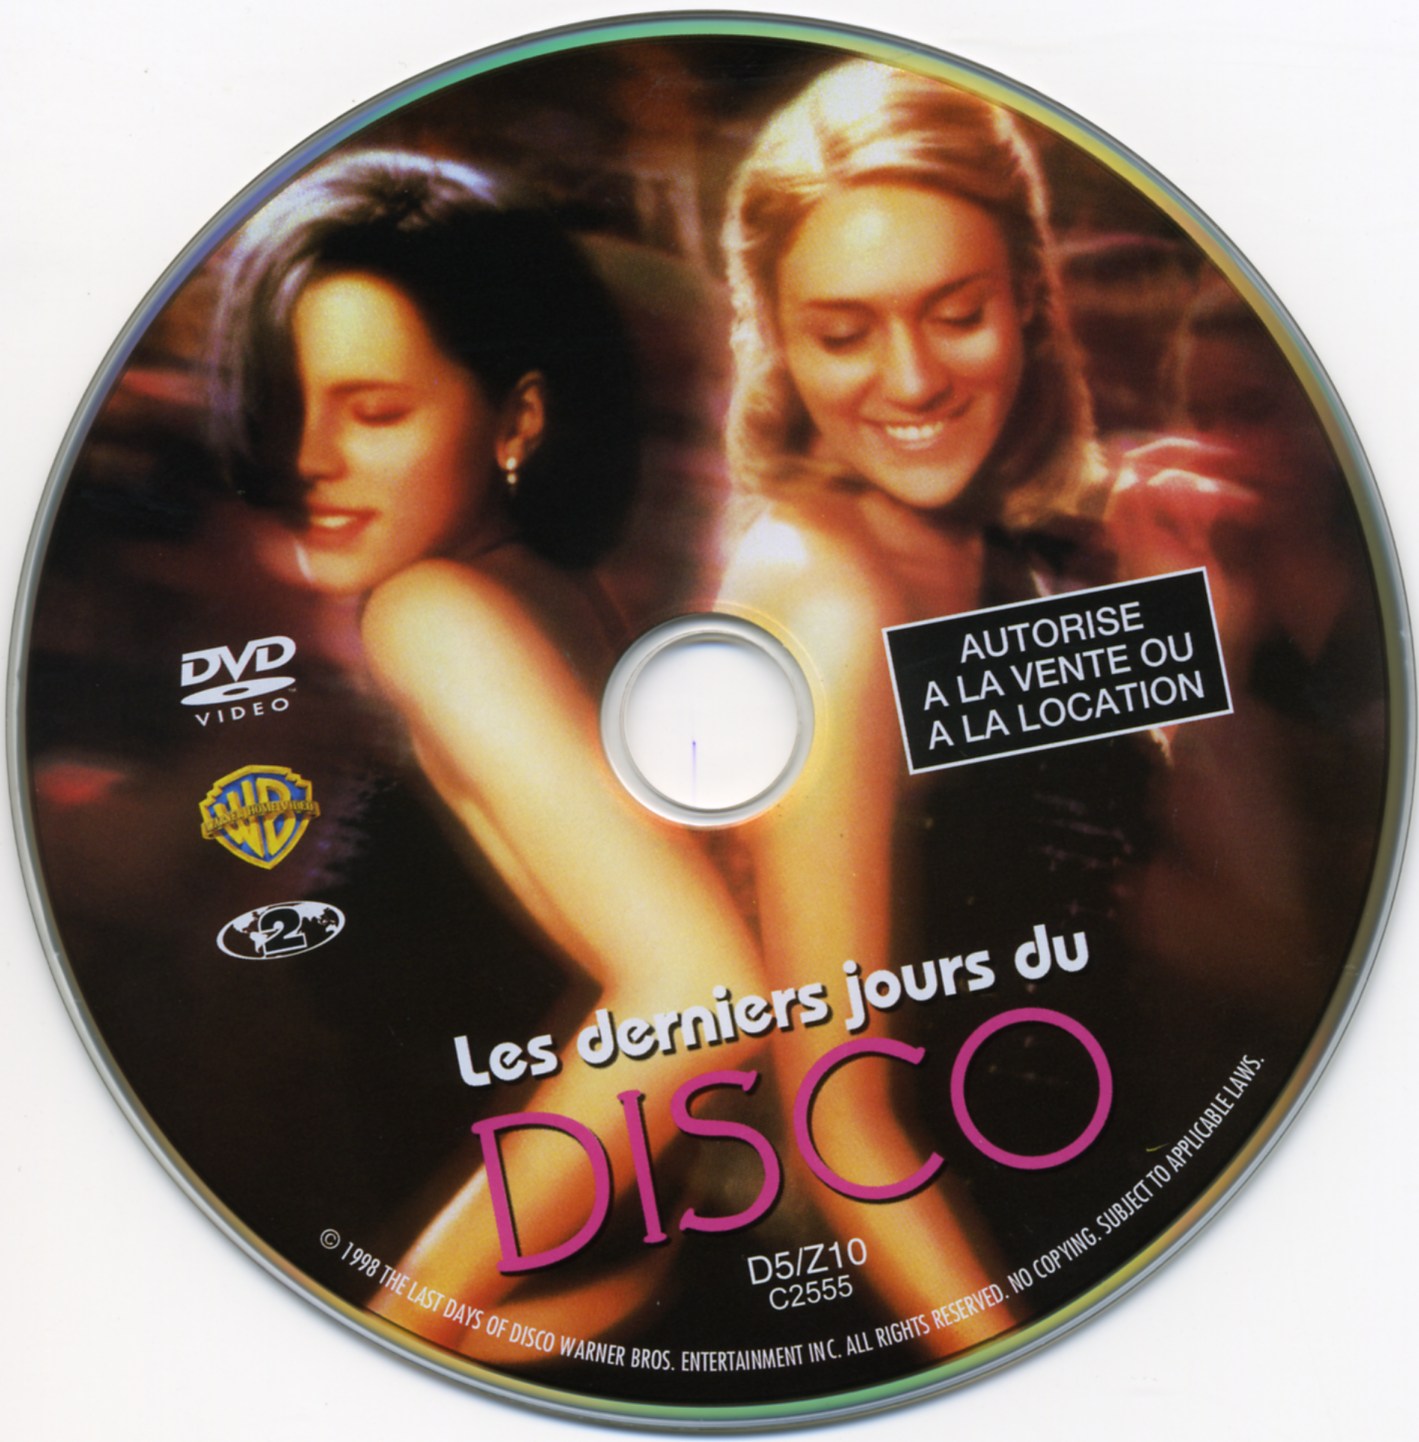 Sticker de Les Derniers jours du disco - Cinéma Passion - Les Derniers Jours Du Disco Musique